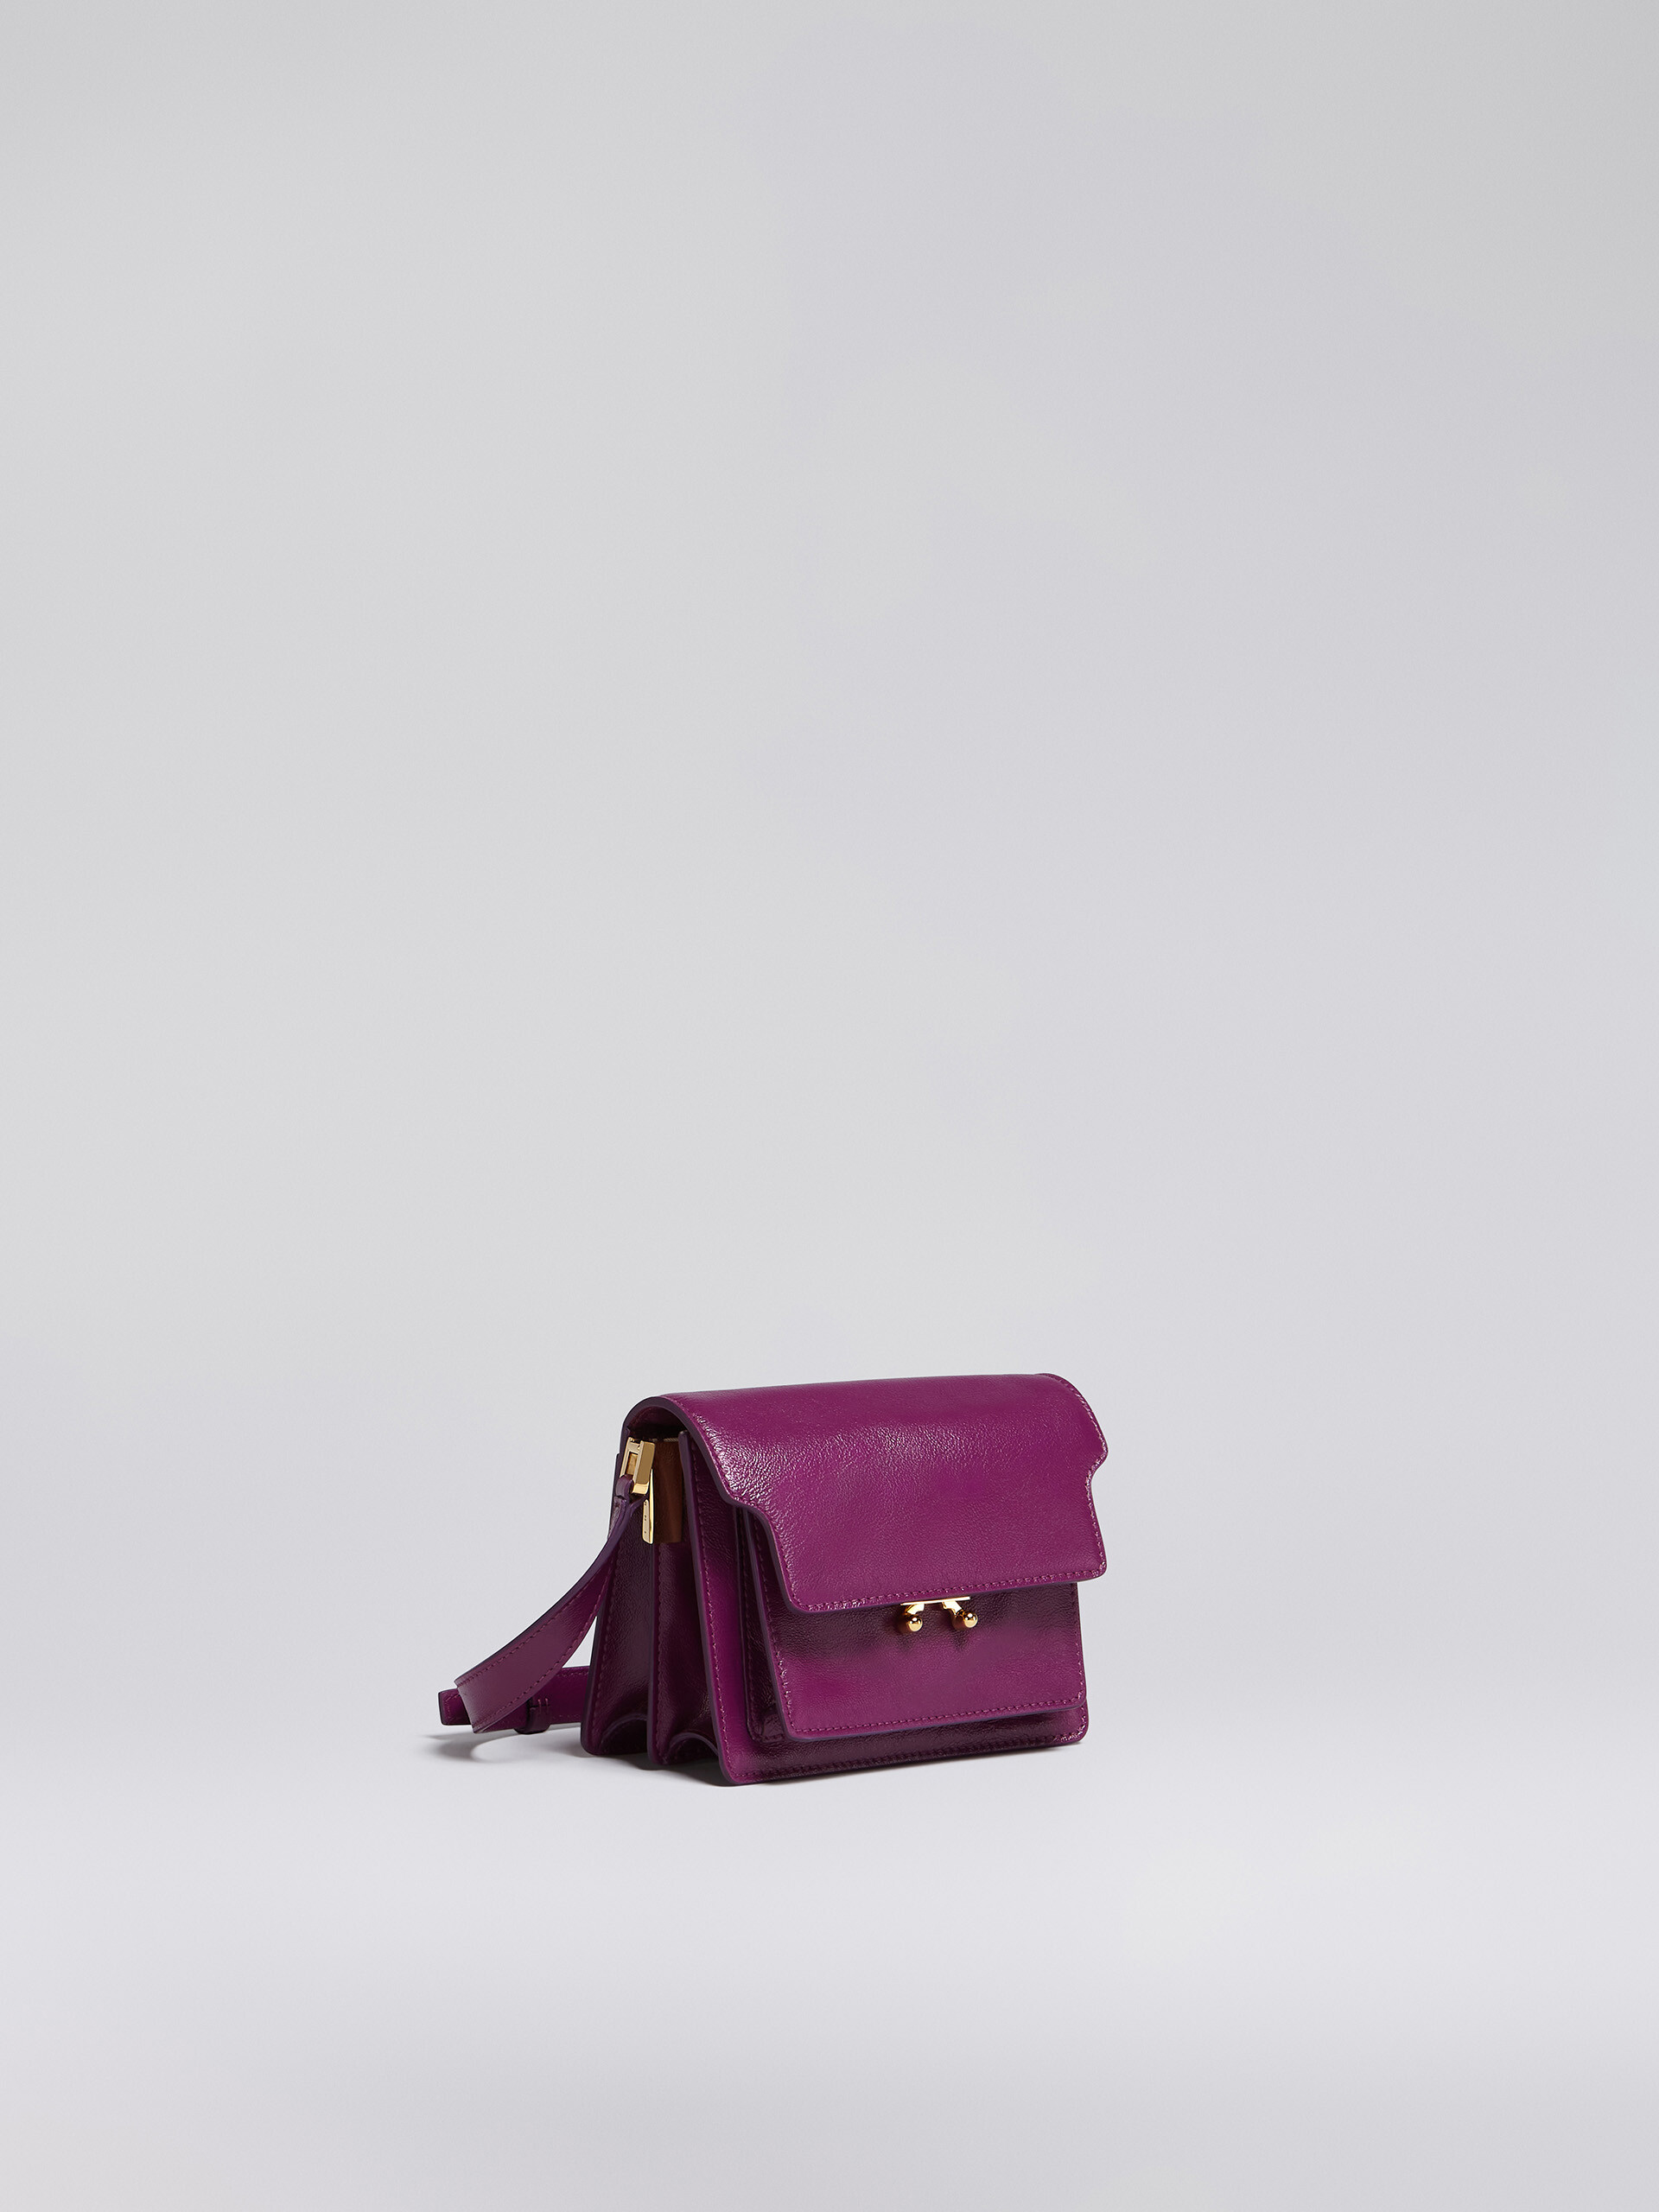 TRUNK SOFT mini bag in purple leather - Shoulder Bag - Image 6